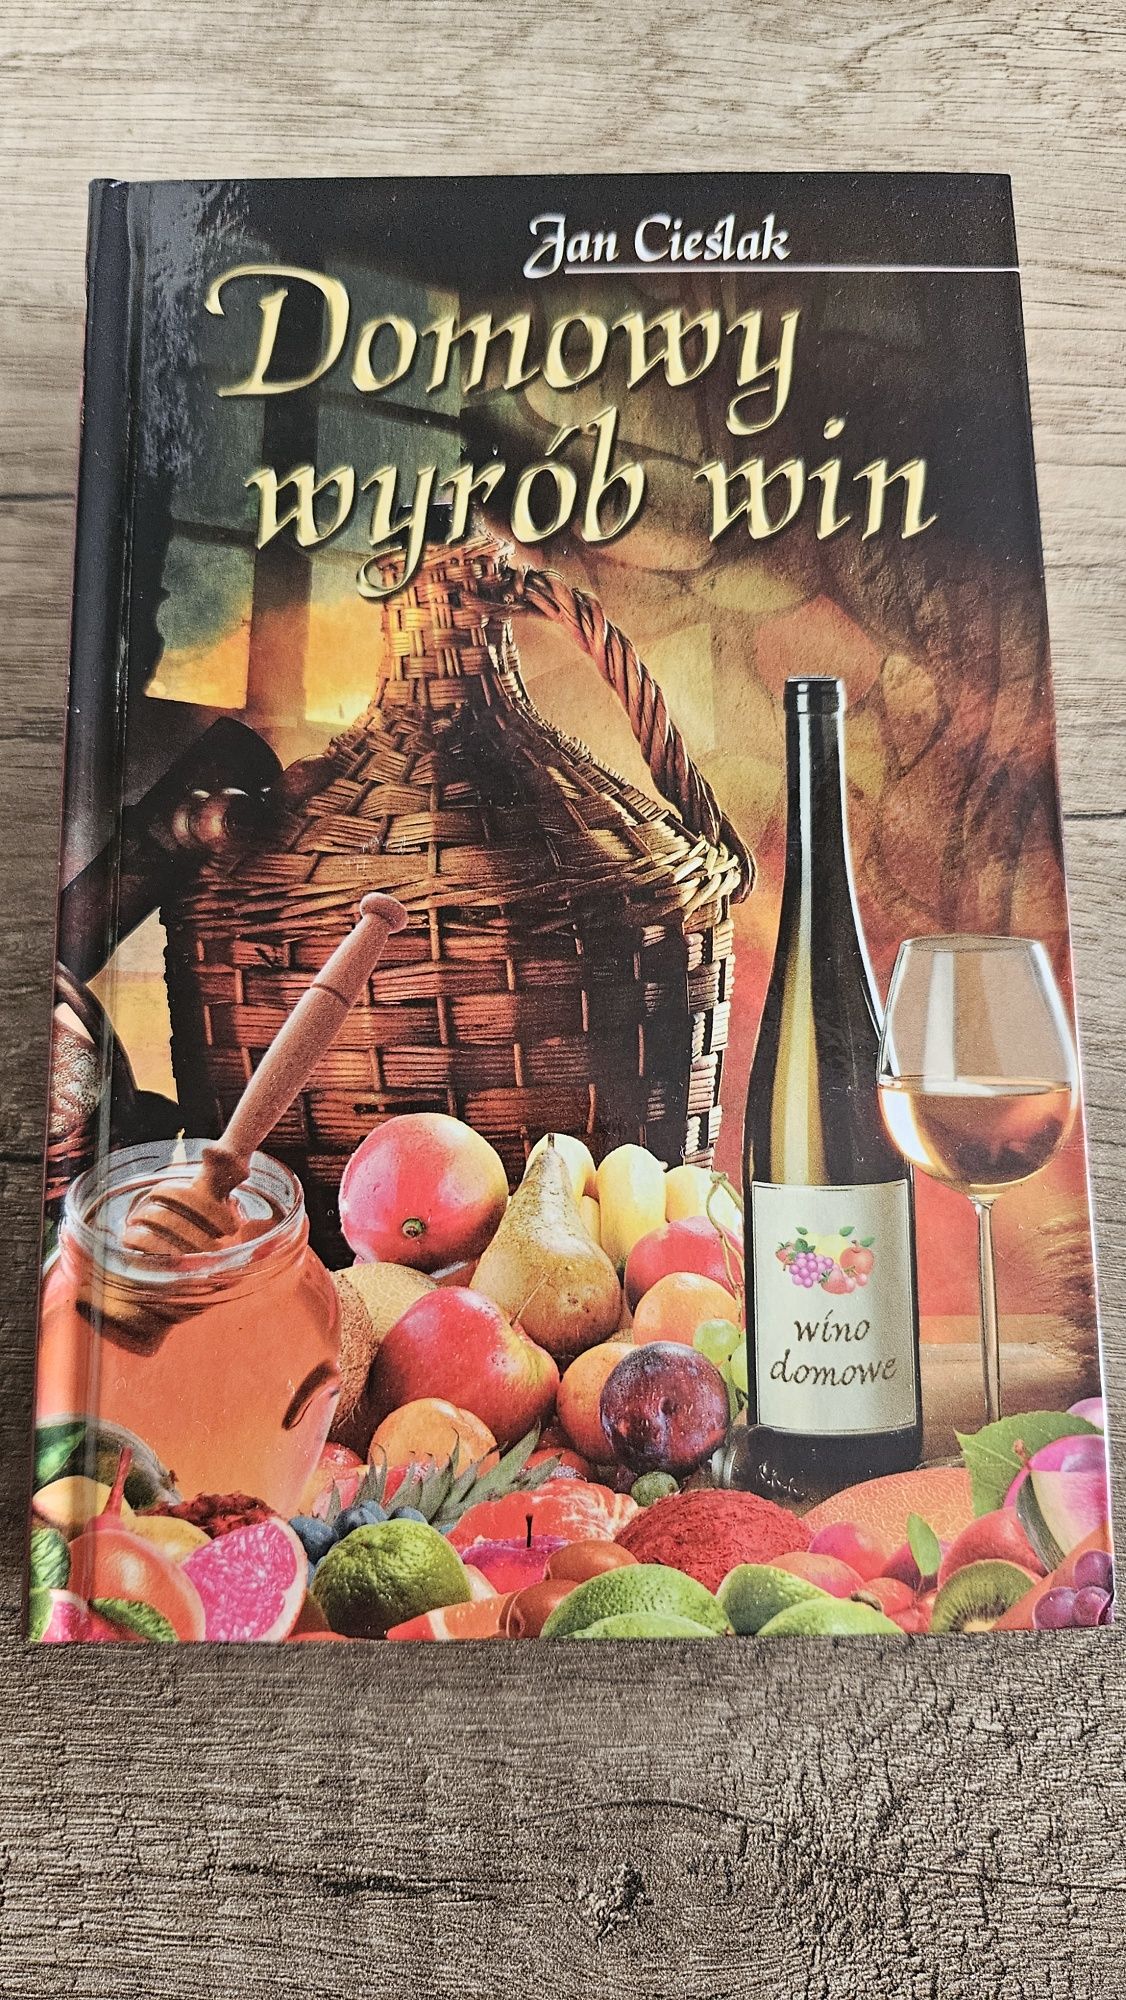 Domowy wyrób win (i innych alkoholi) książka Jan Cieślak